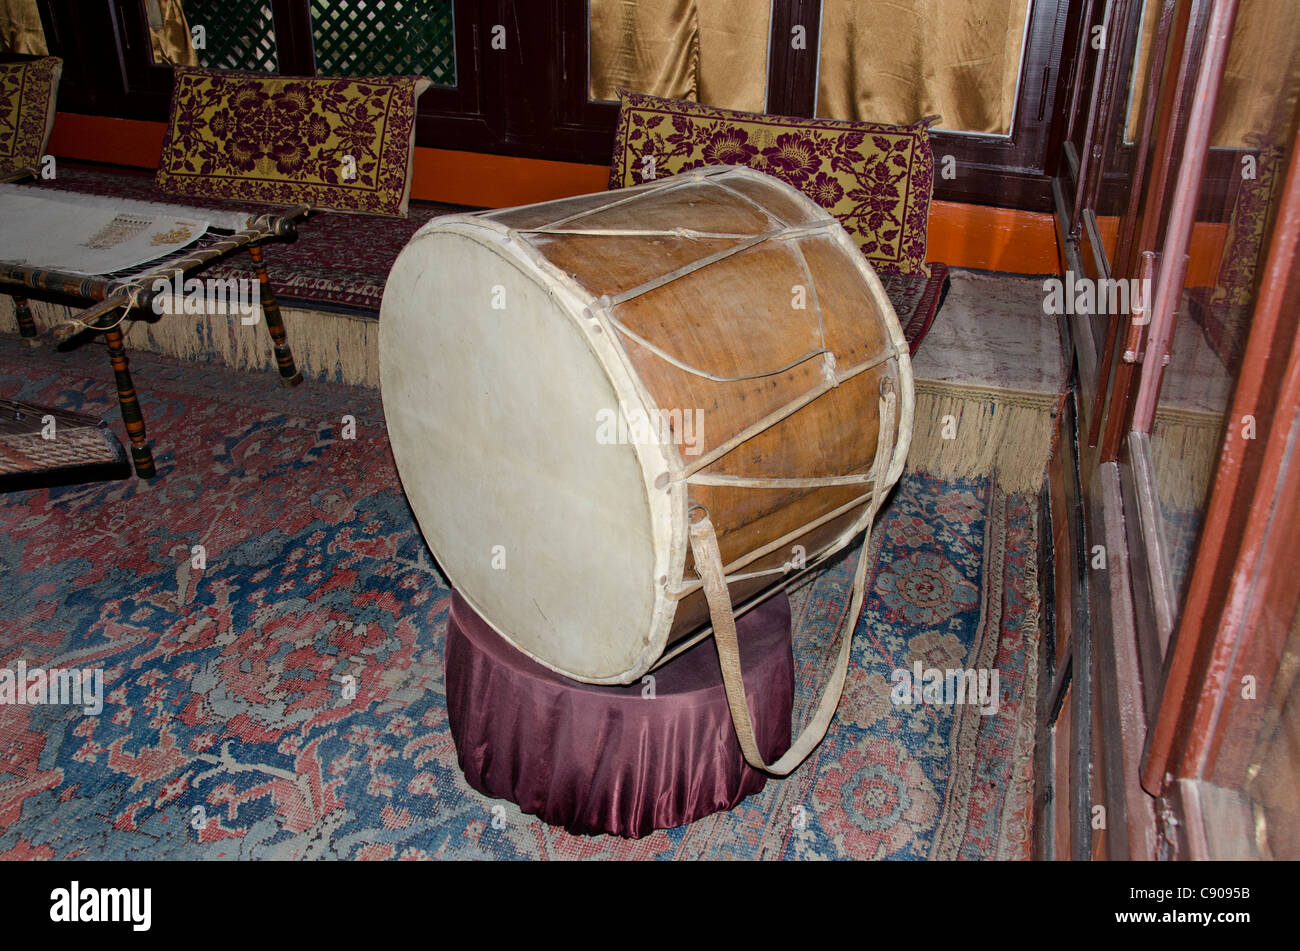 L'Ukraine, Sébastopol, ville de bakhtchyssaraï. khan's palace. intérieur du 18e siècle harem, instruments anciens. Banque D'Images